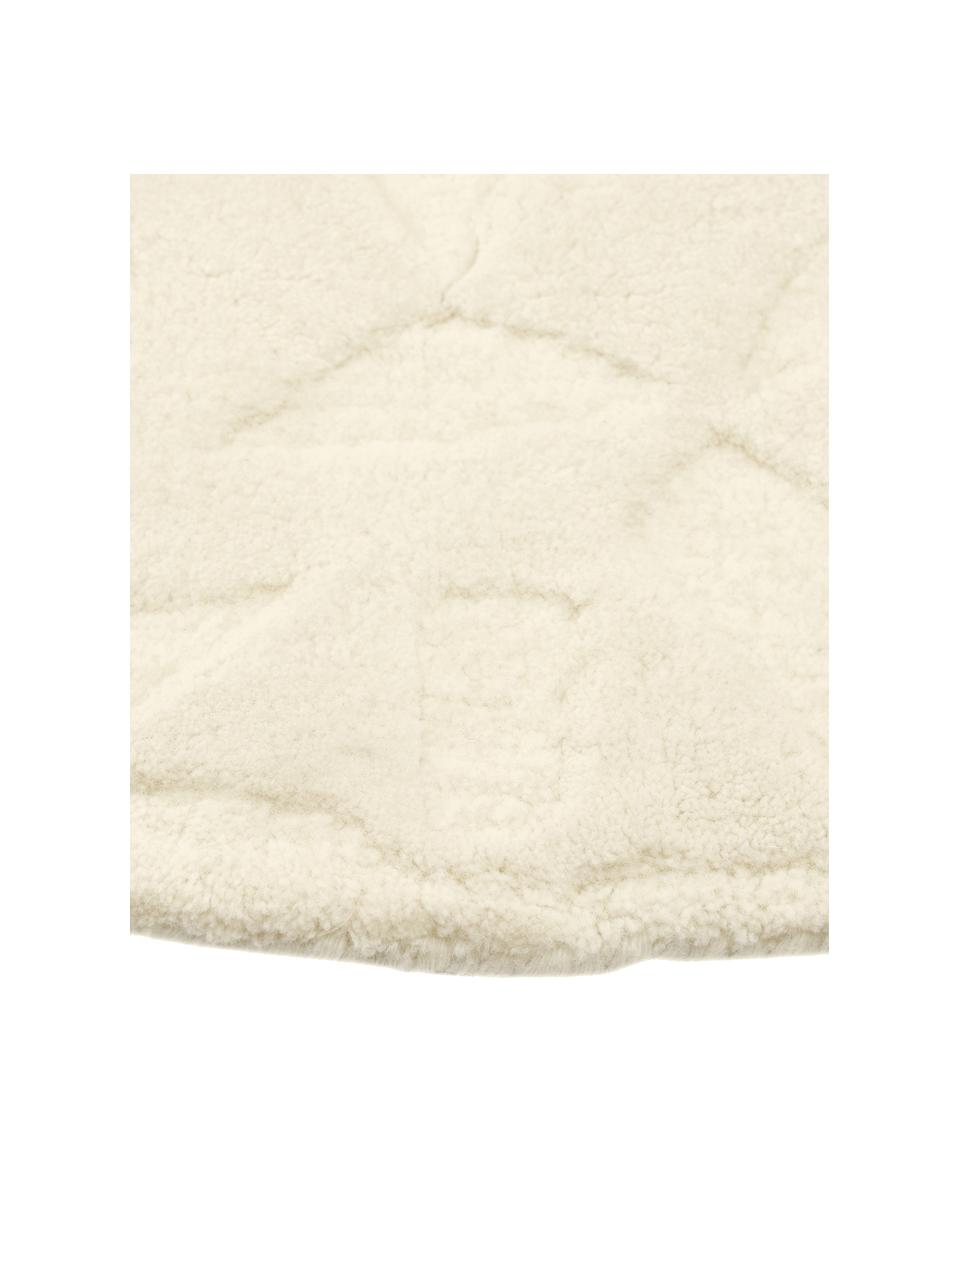 Runder Wollteppich Rory in Cremeweiß, handgetuftet, Flor: 100% Wolle, Weiß, Ø 120 cm (Größe S)